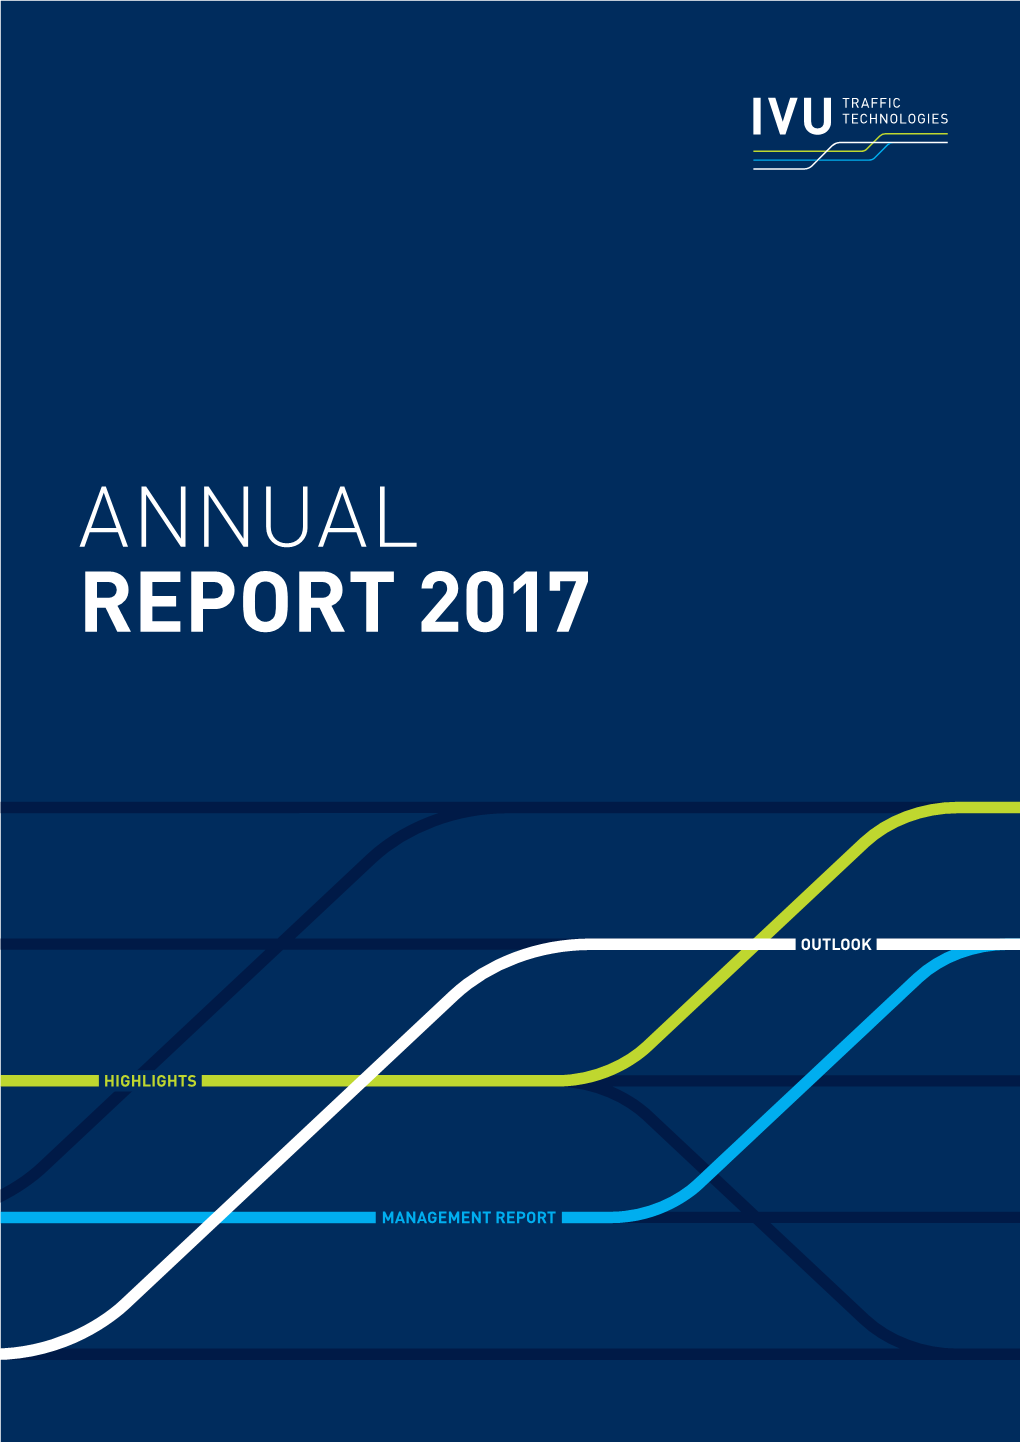 IVU Annual Report 2017